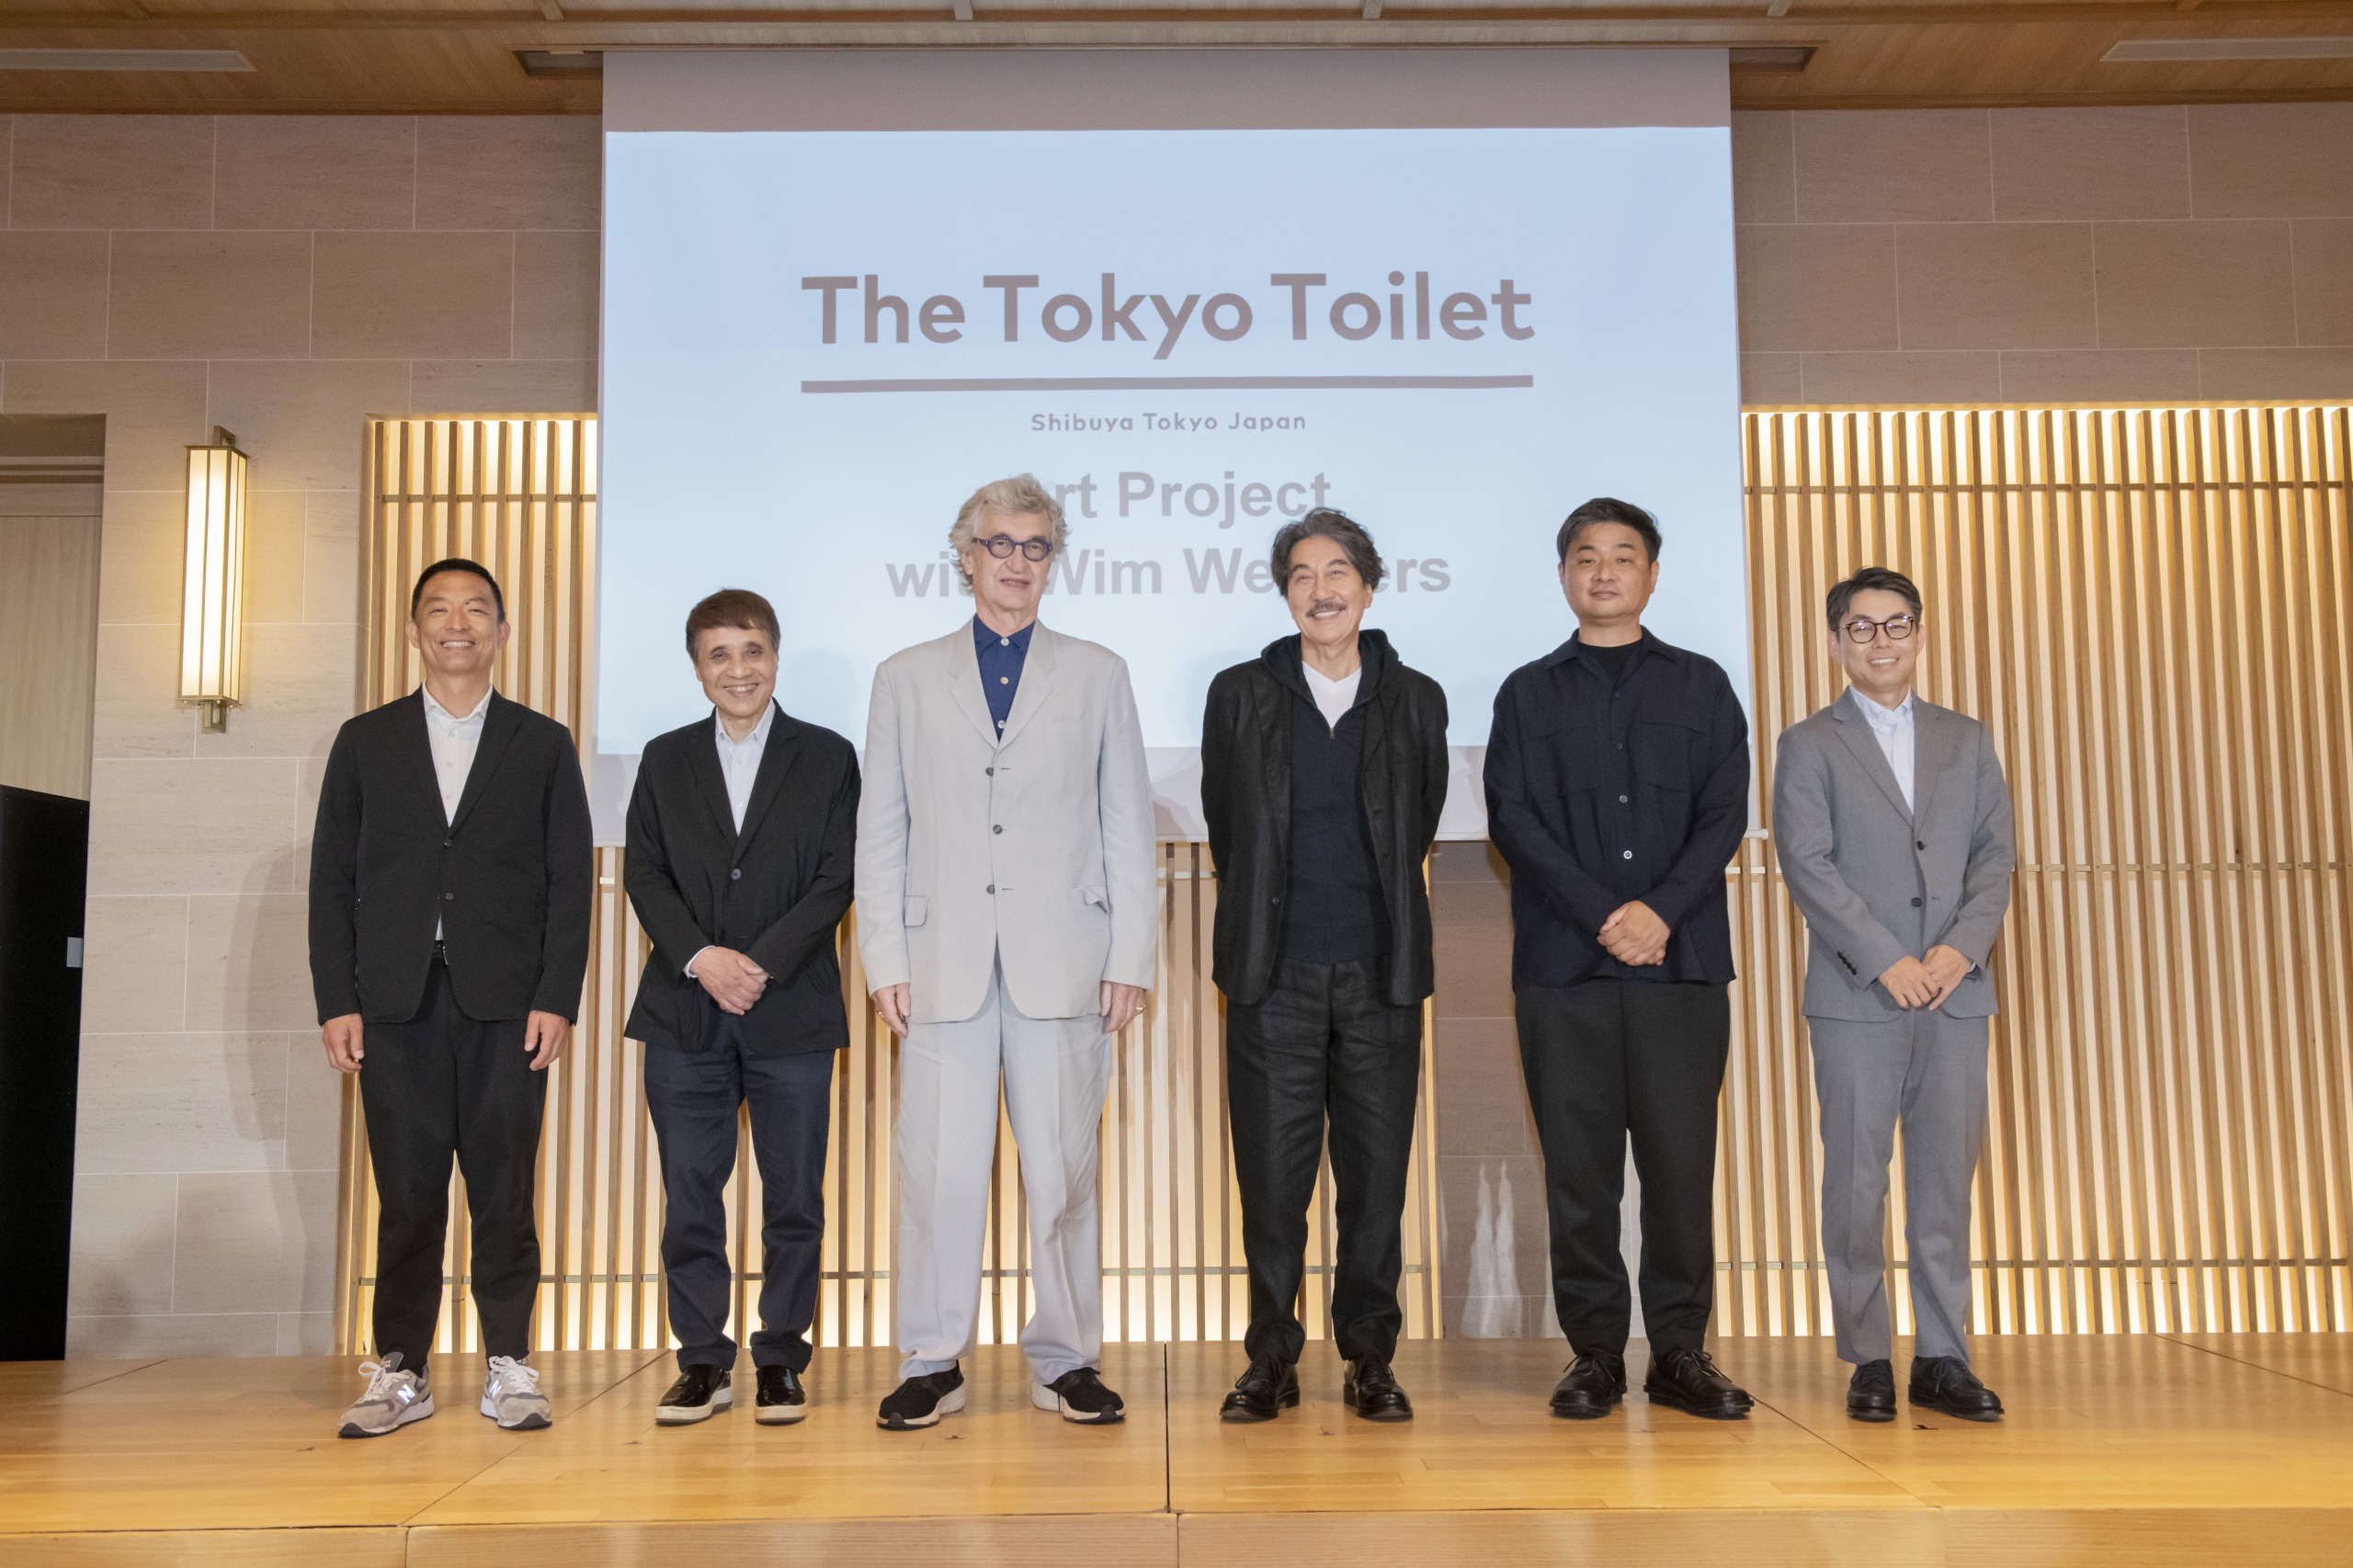 映画監督のヴィム・ヴェンダースが来日、新作は渋谷のトイレが舞台